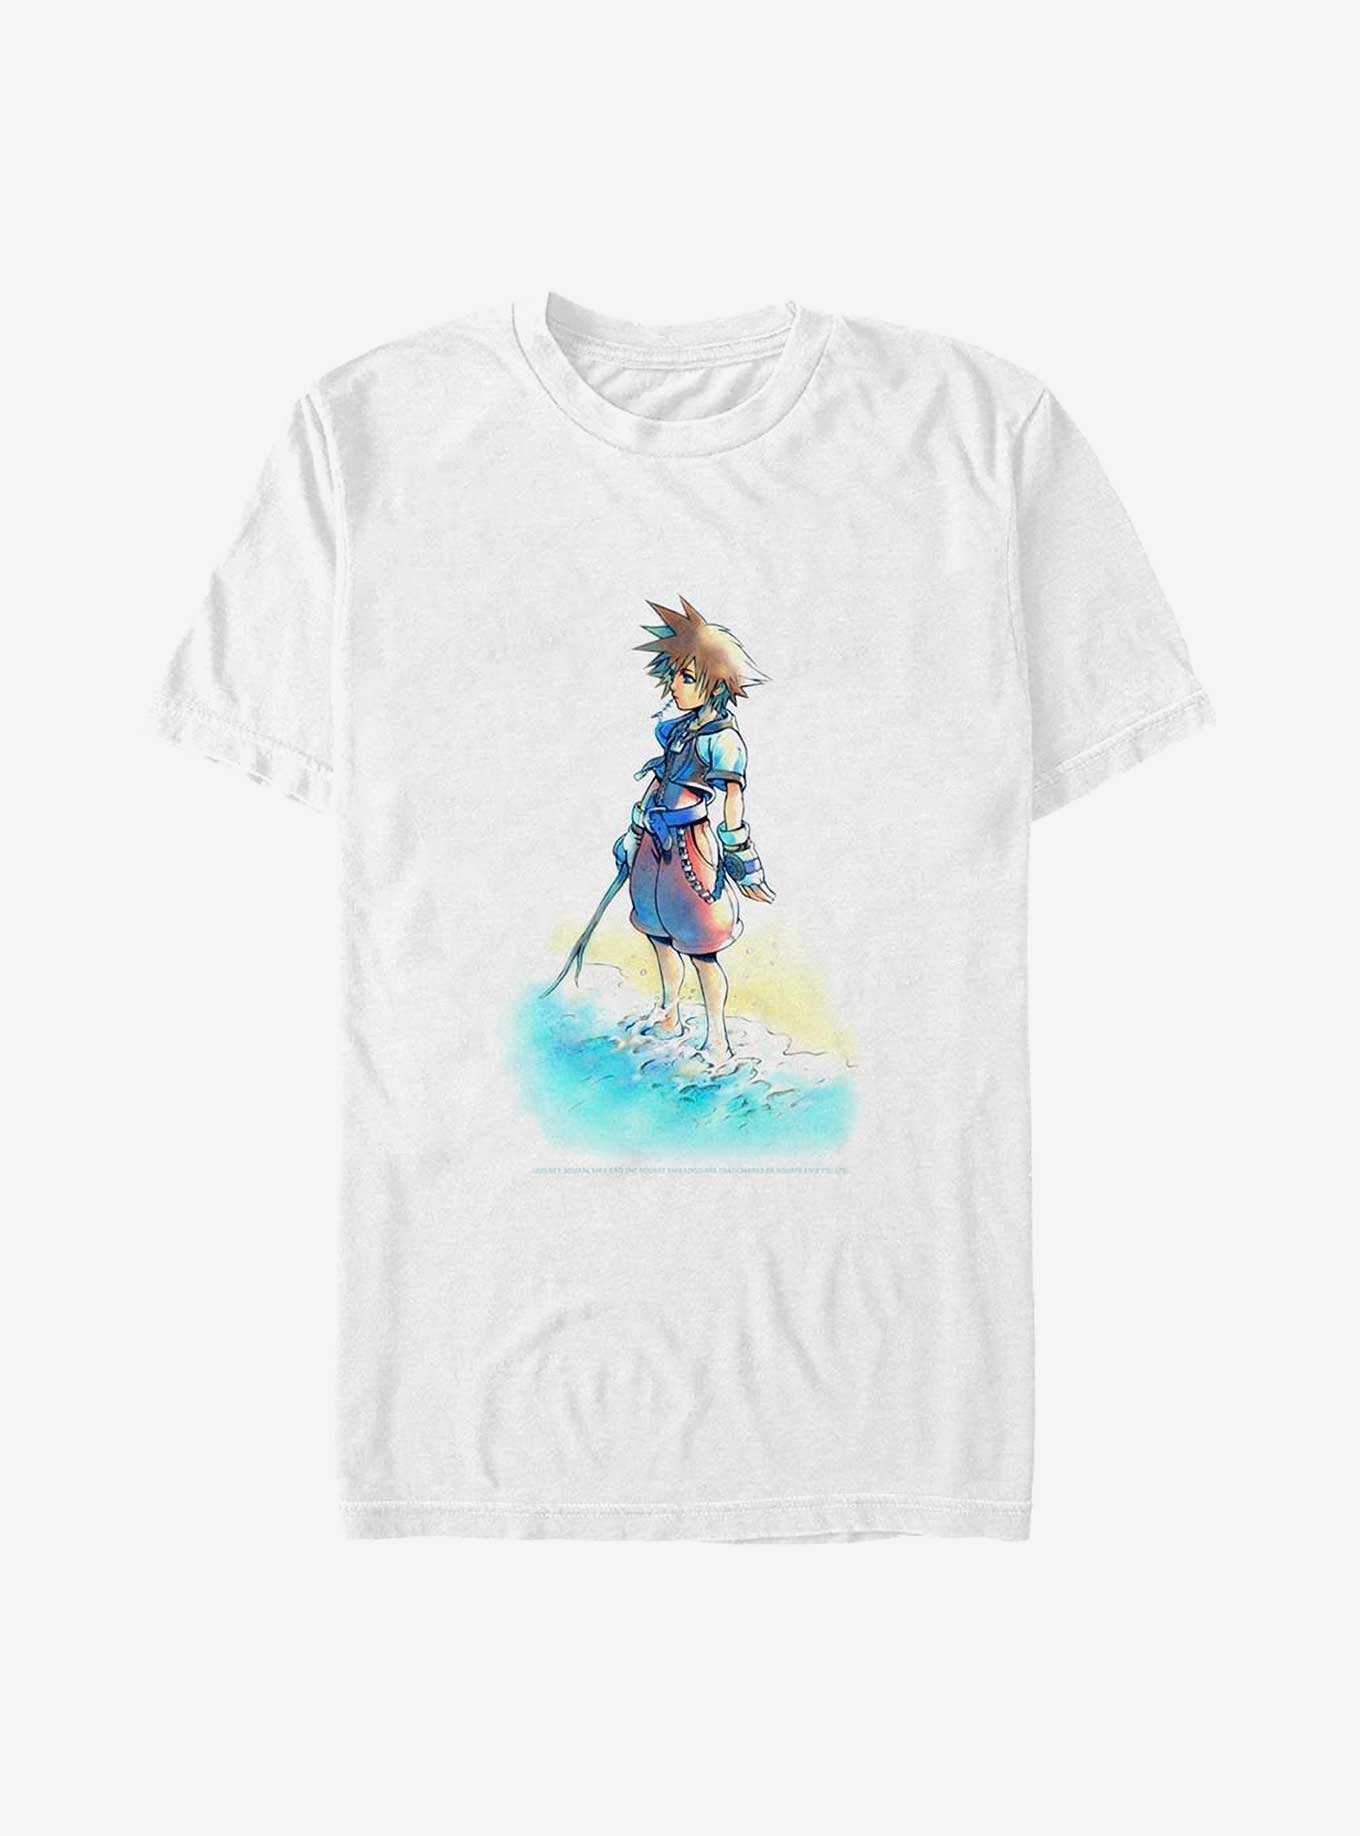 Disney Kingdom Hearts Beach Sora Big & Tall T-Shirt, , hi-res